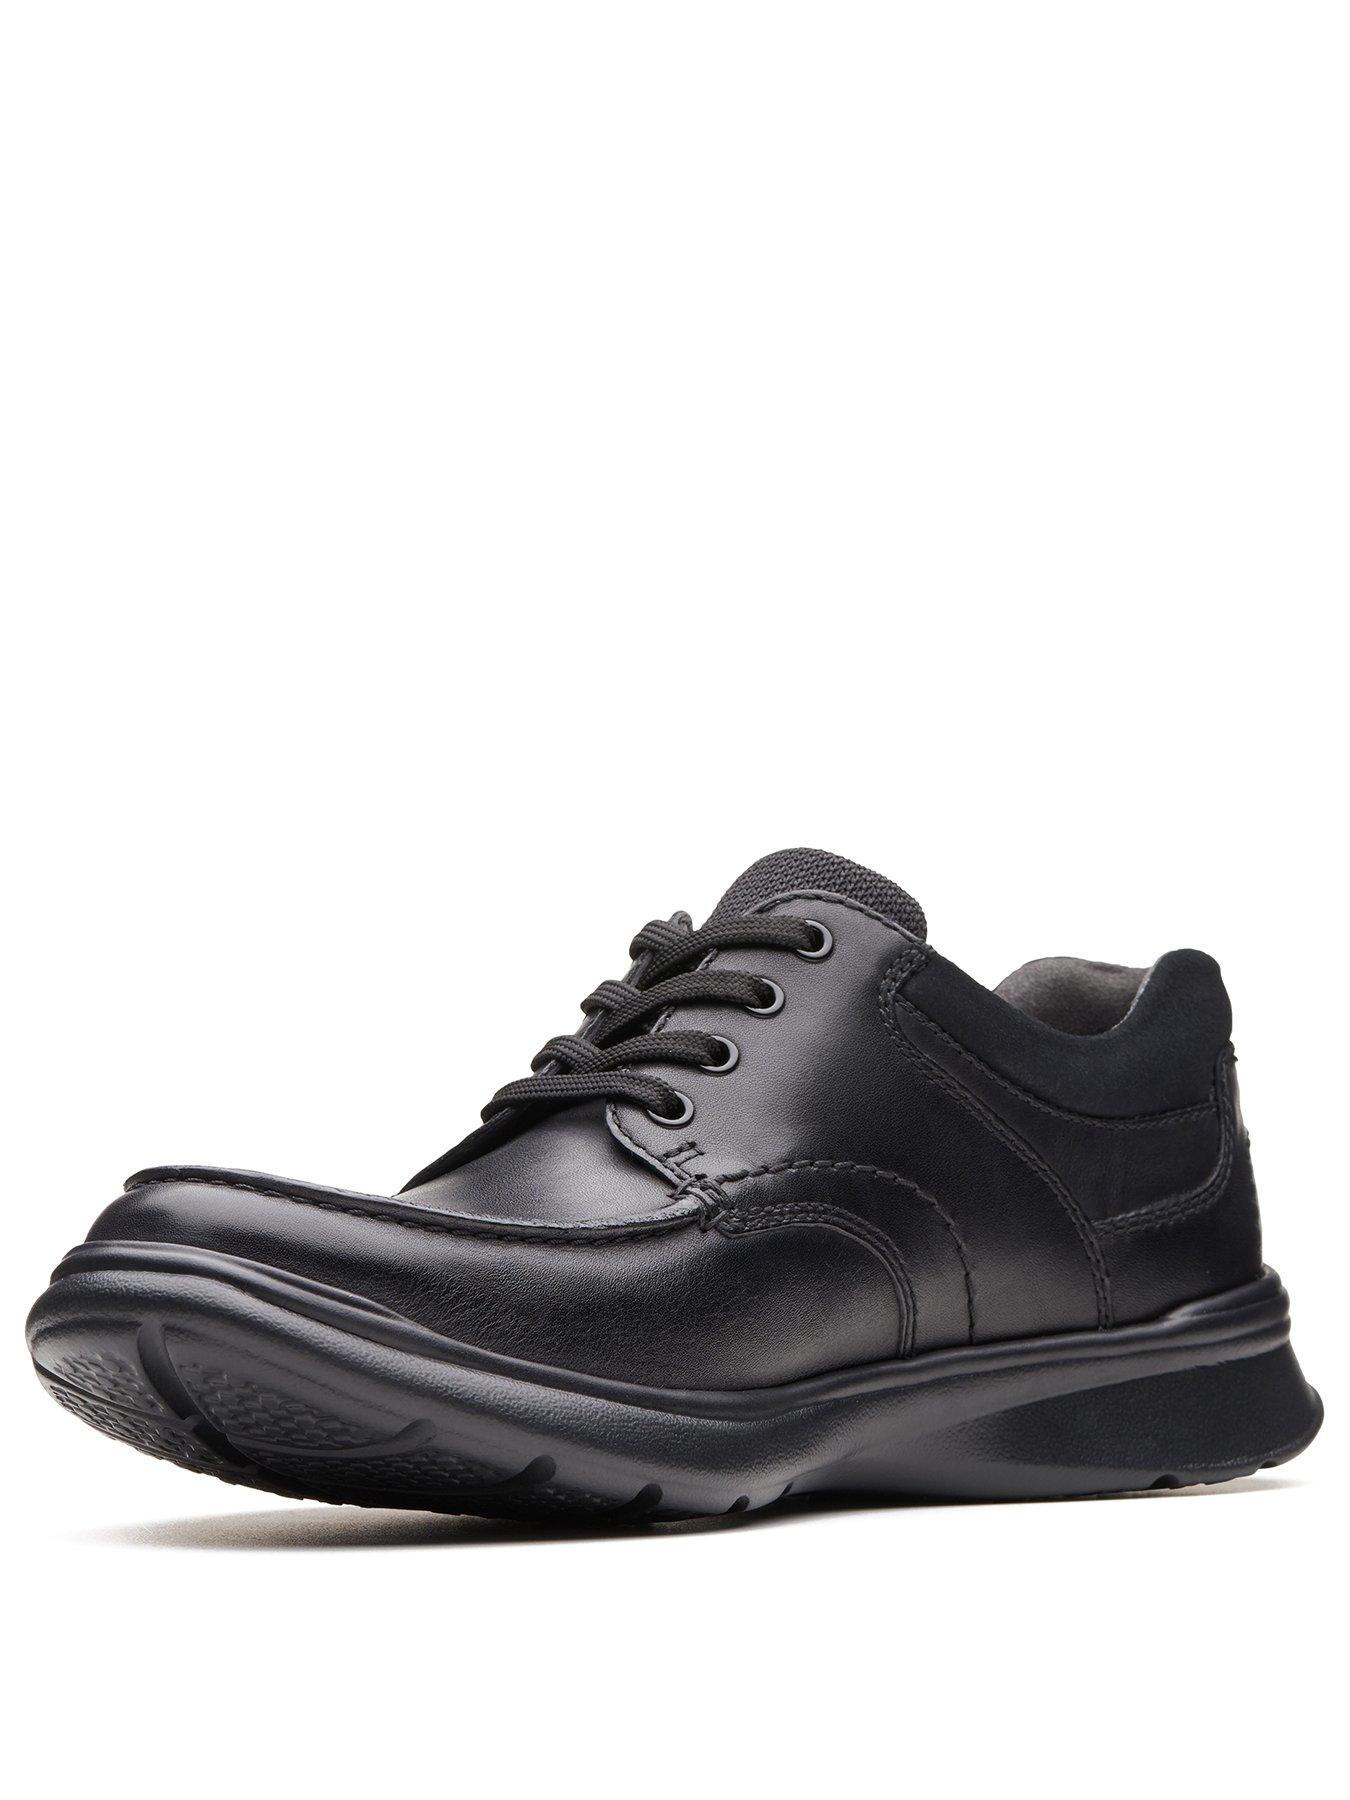 Clarks Men's Shoes \u0026 Boots 